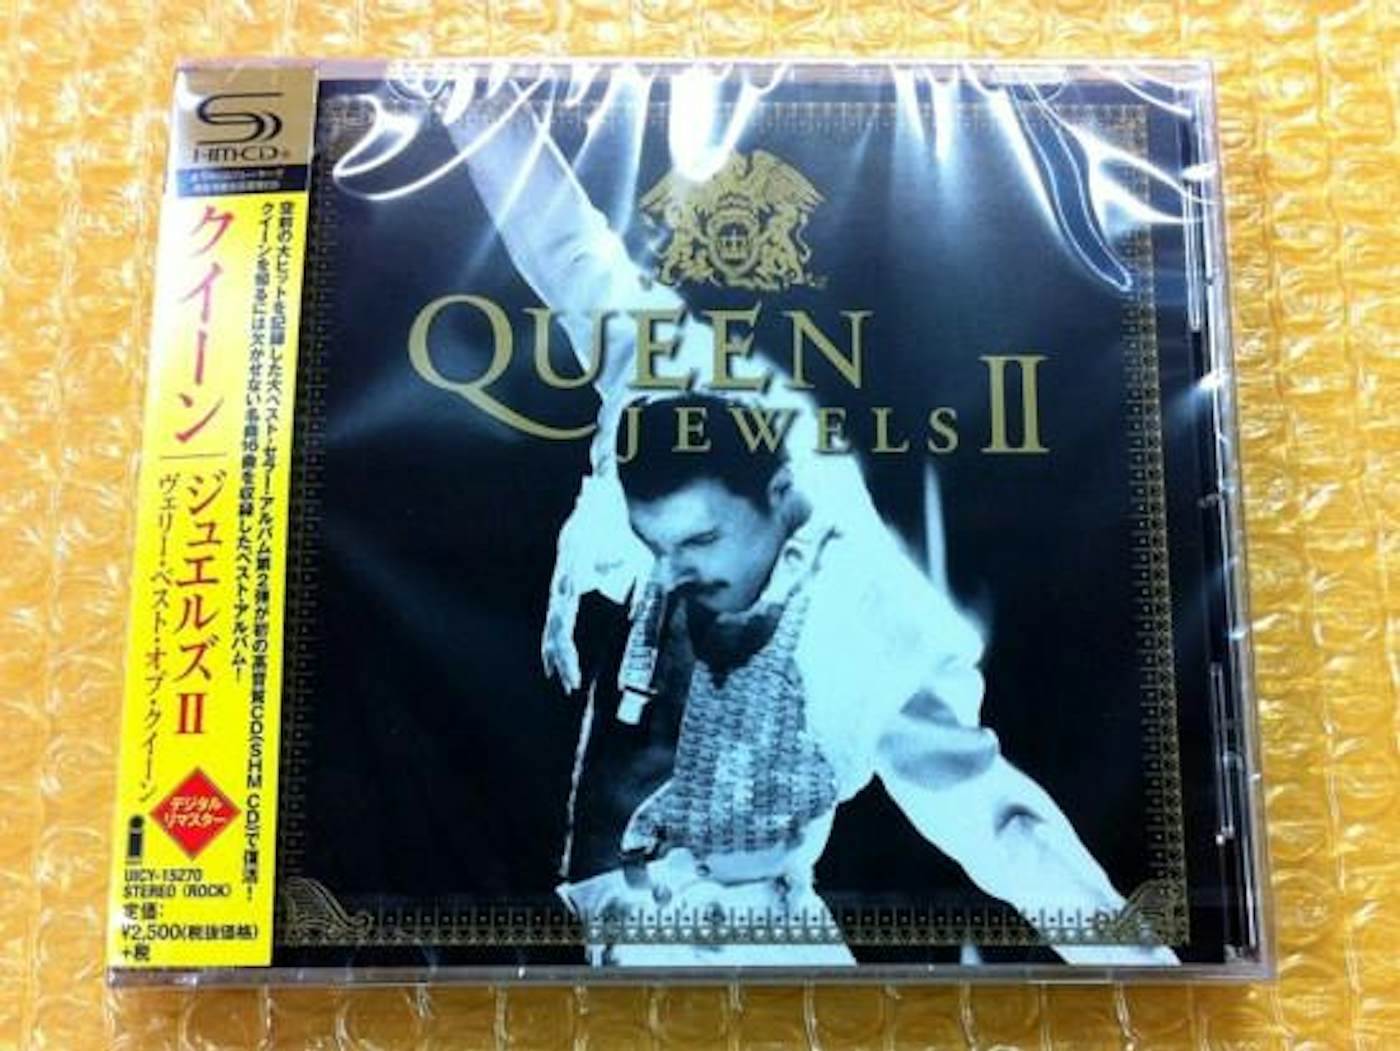 jewels ii cd - Queen